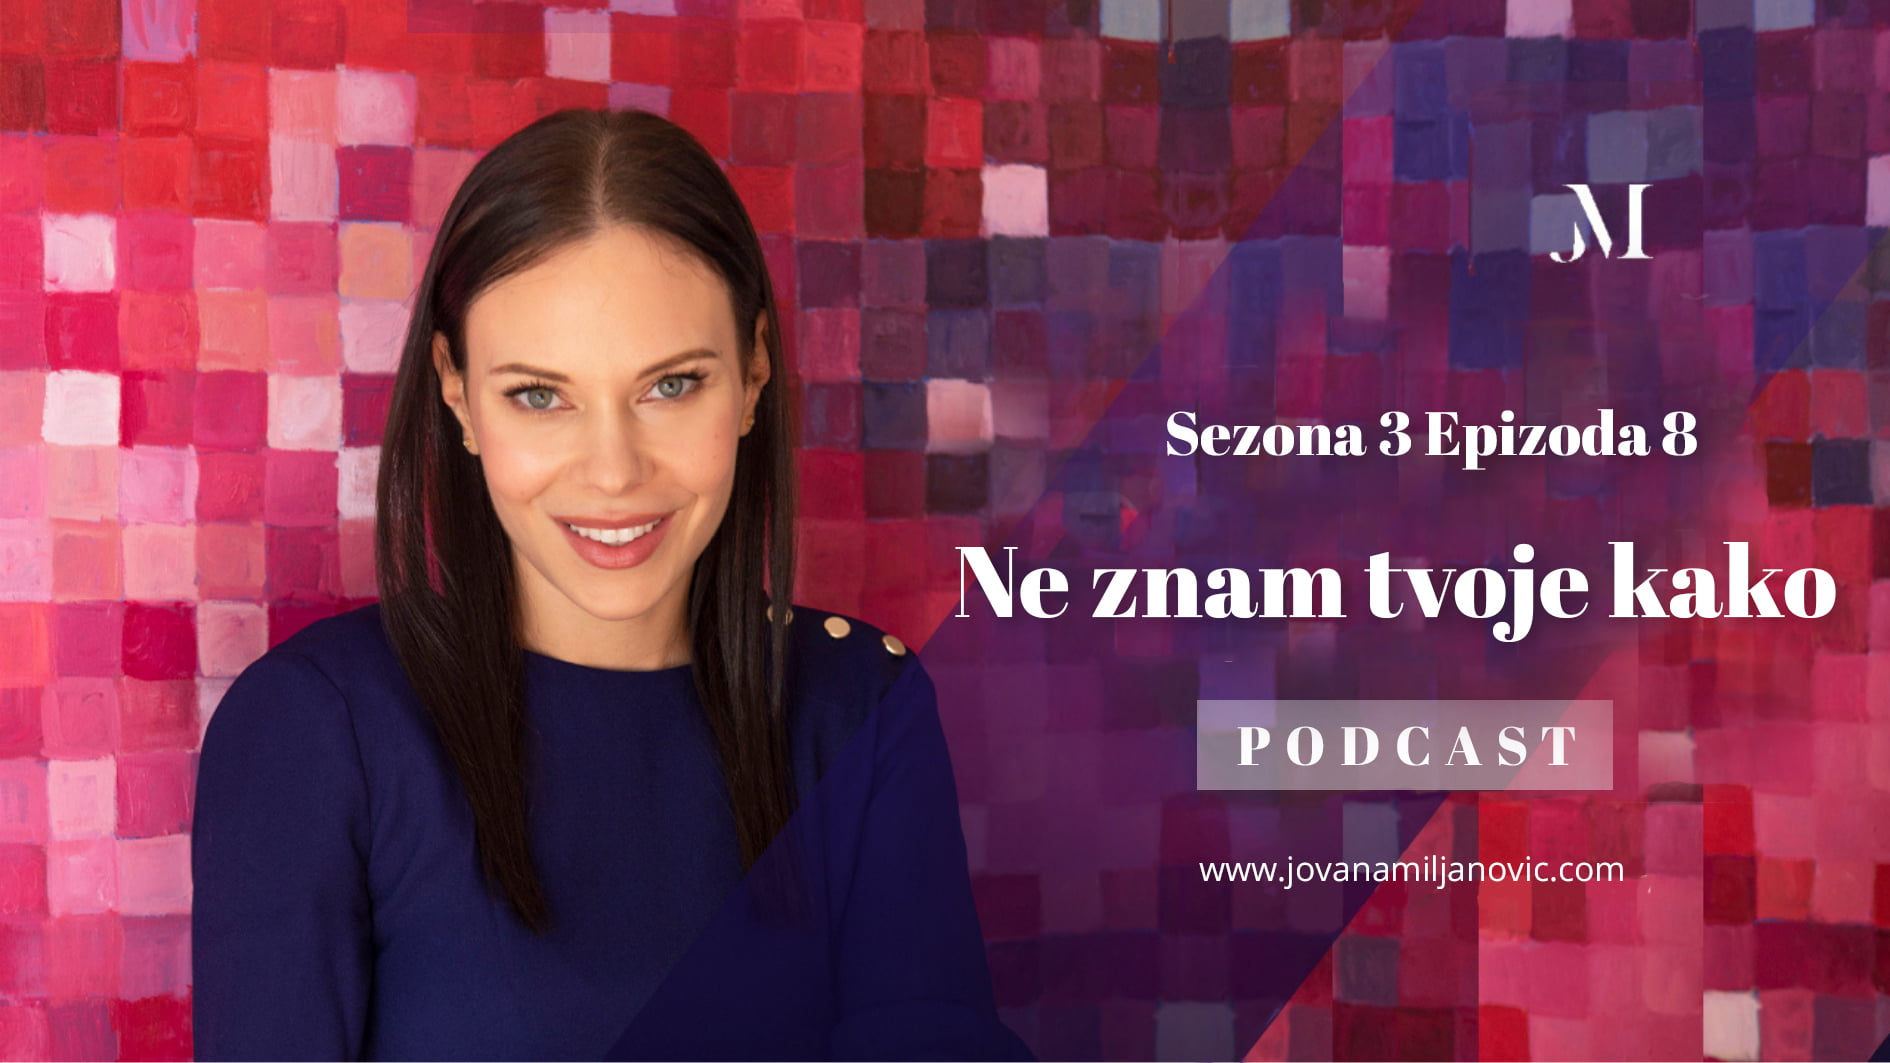 Jovana Miljanovic Podcast